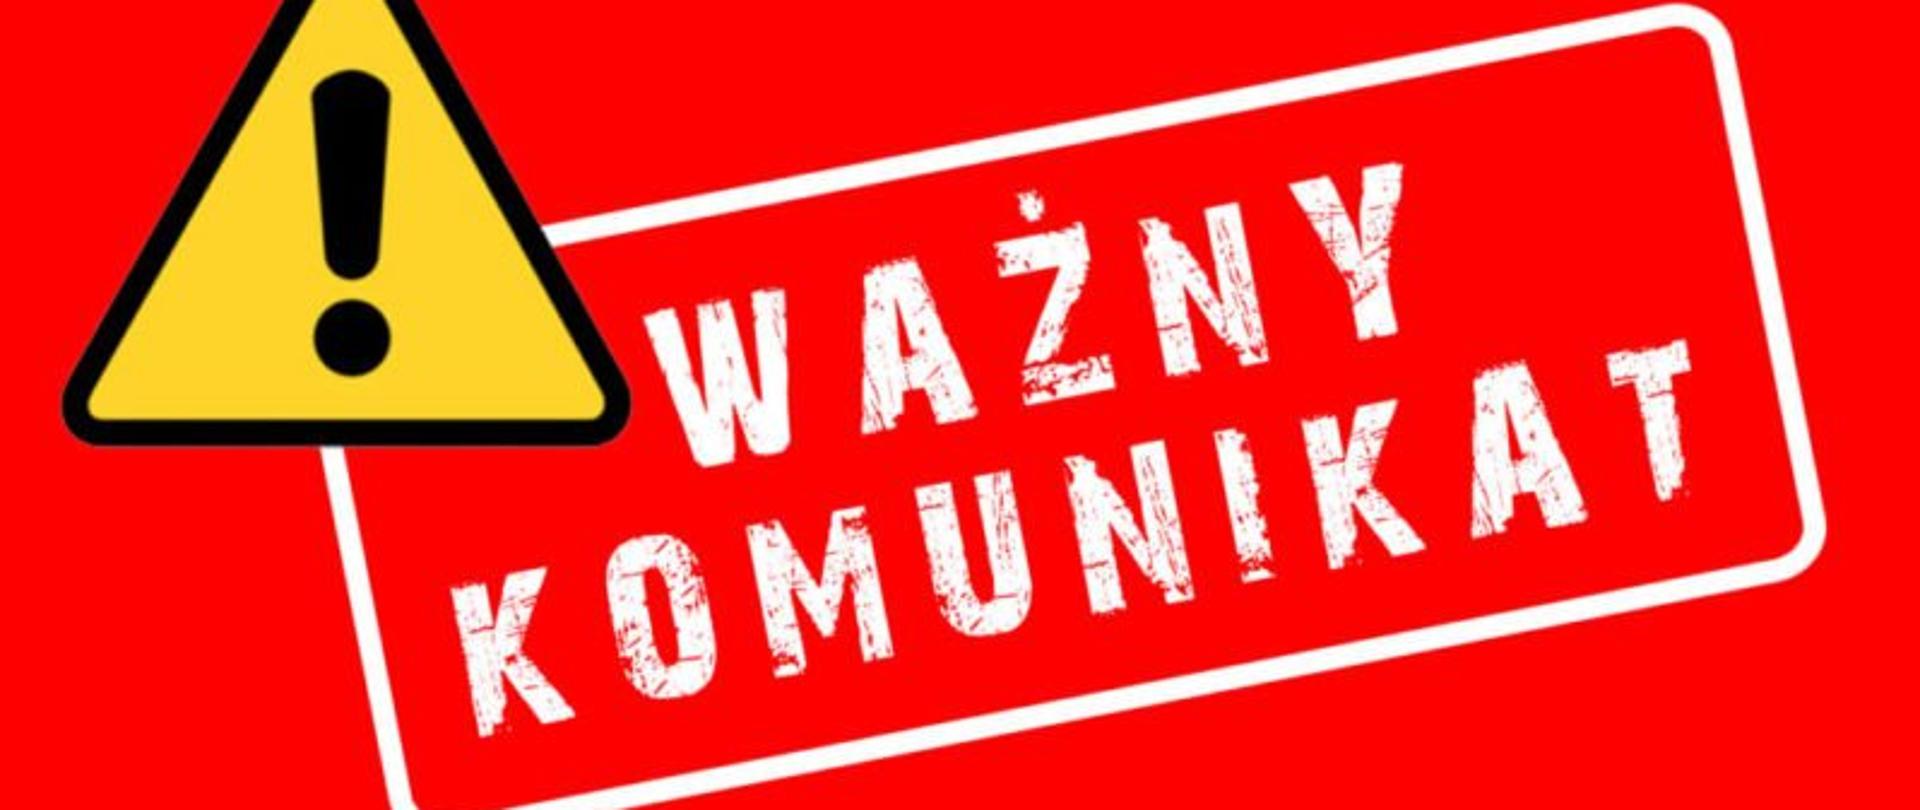 UWAGA – wprowadzono 3 stopień alarmowy CHARLIE-CRP - Baza wiedzy - Portal  Gov.pl